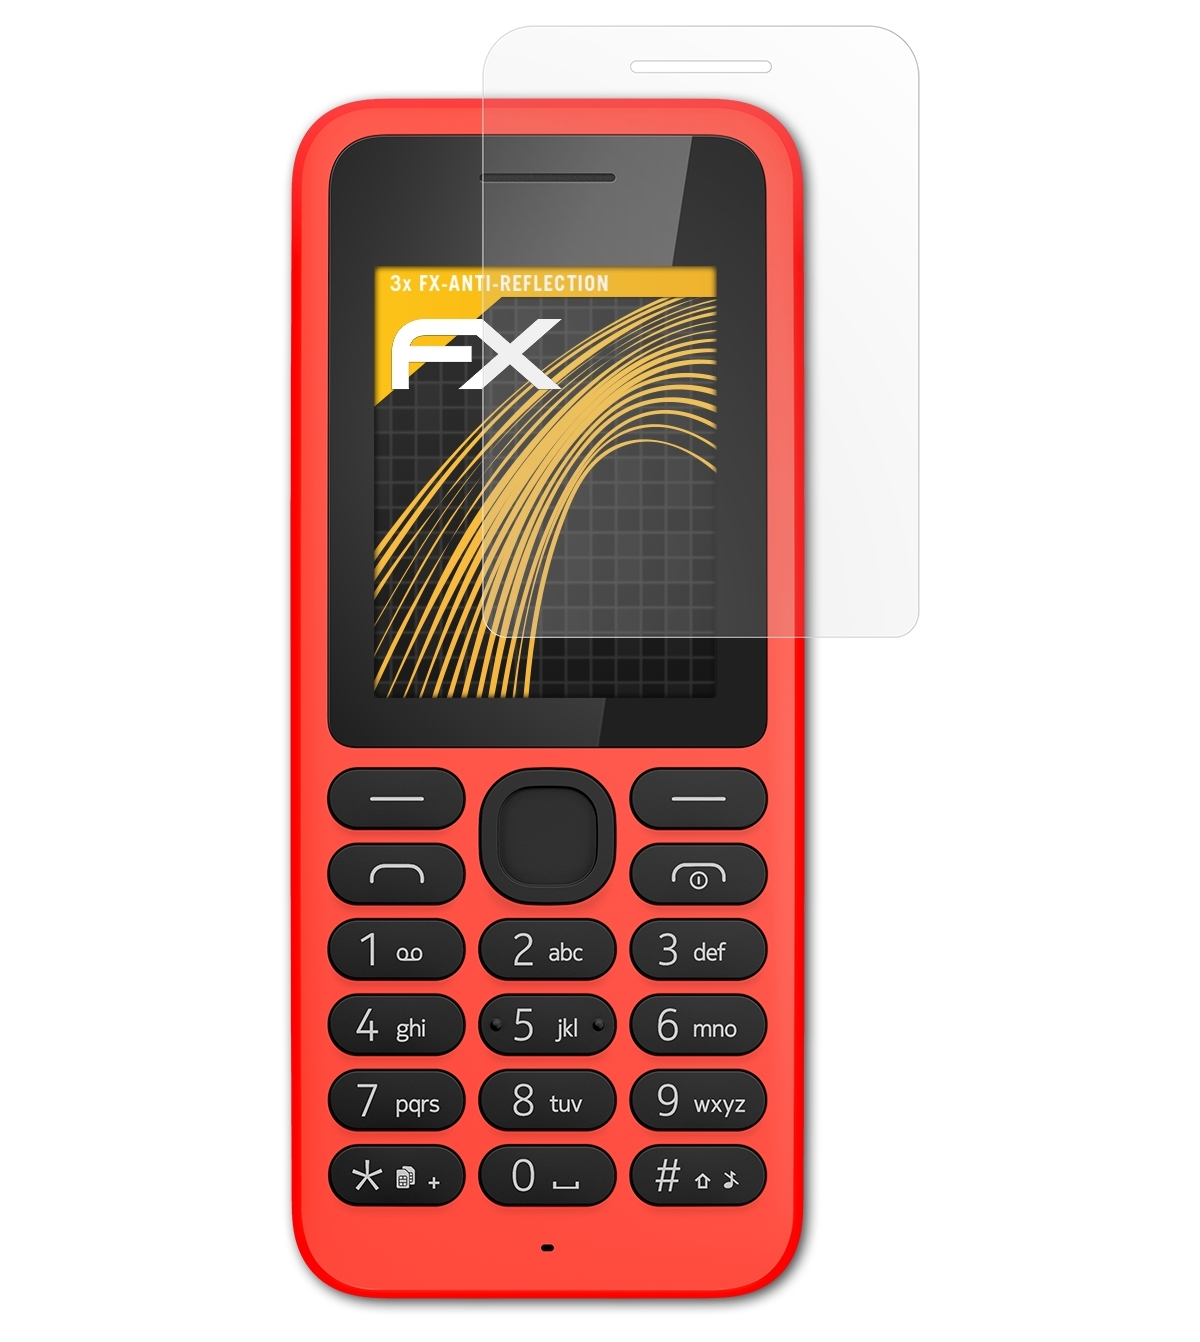 Displayschutz(für Nokia 3x 130) FX-Antireflex ATFOLIX